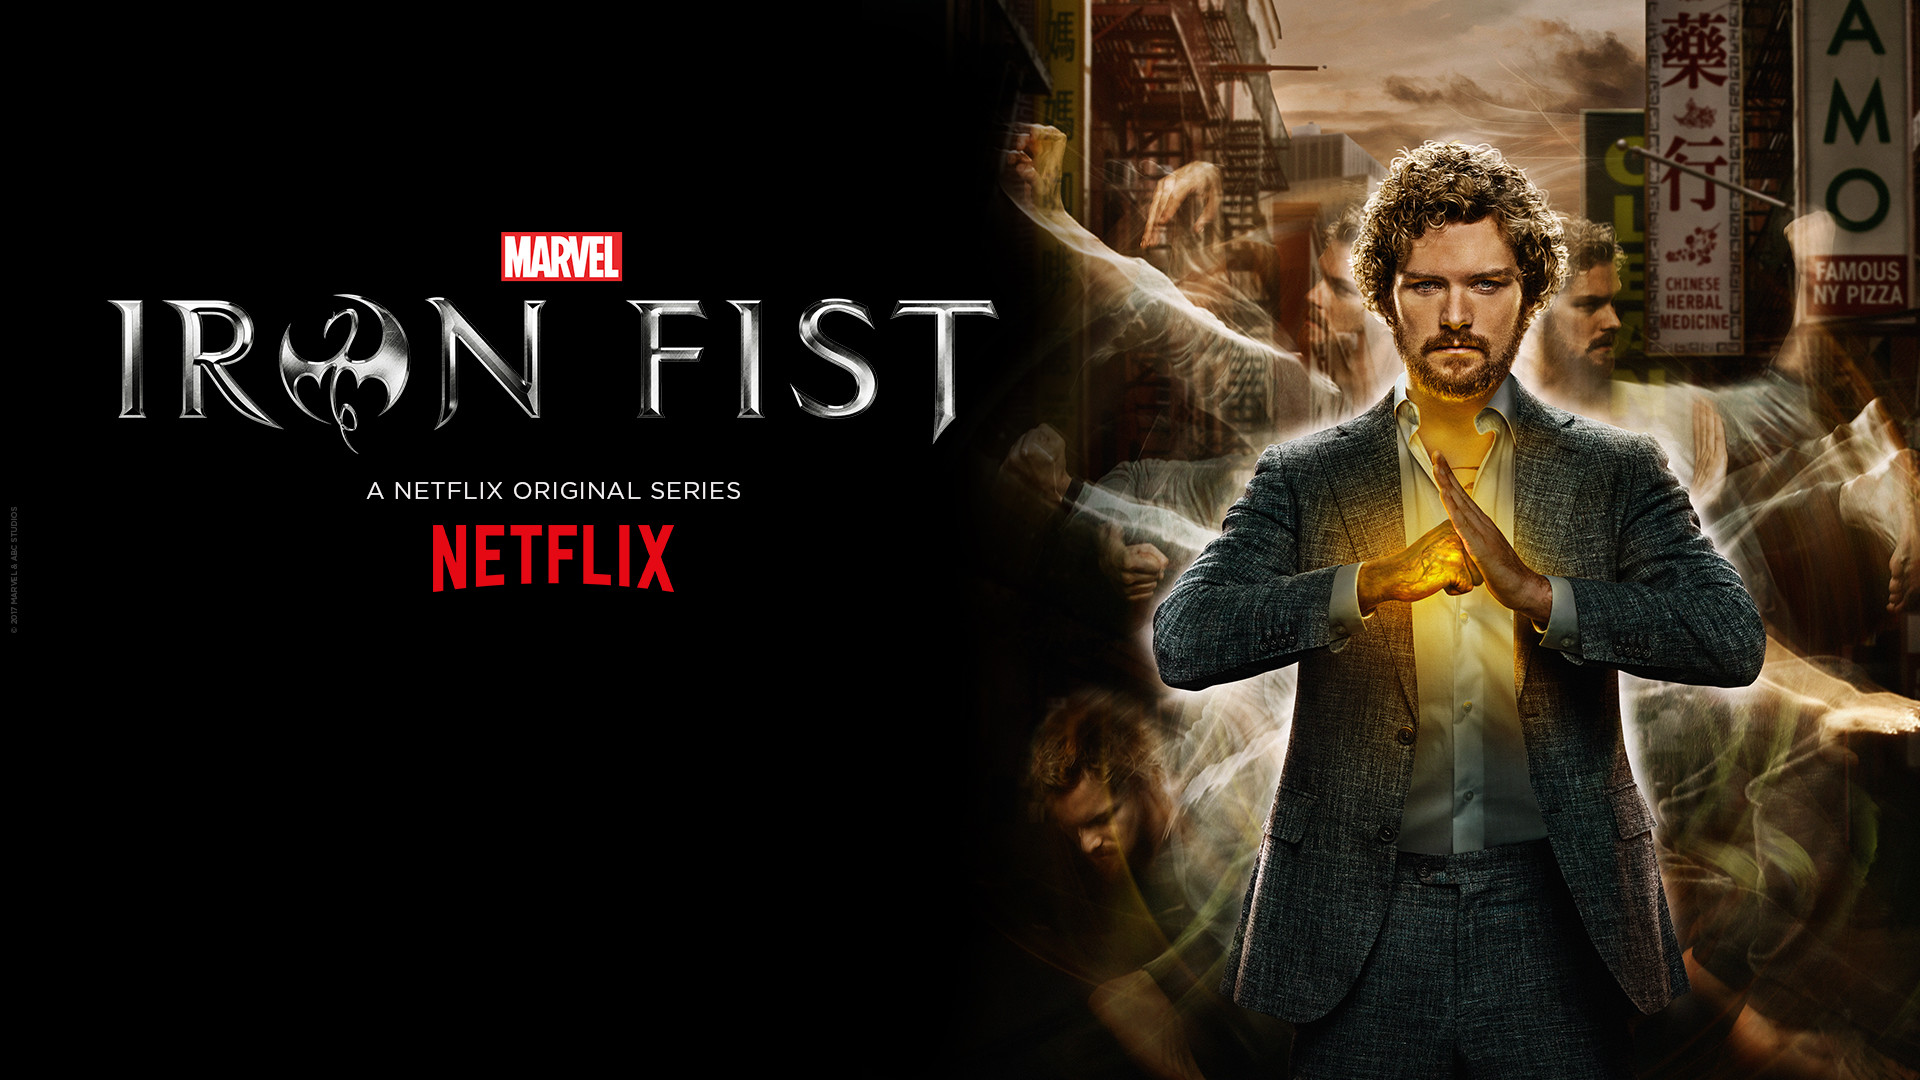 Iron Man Wallpapers Free Download - Iron Fist Wallpaper Netflix , HD Wallpaper & Backgrounds